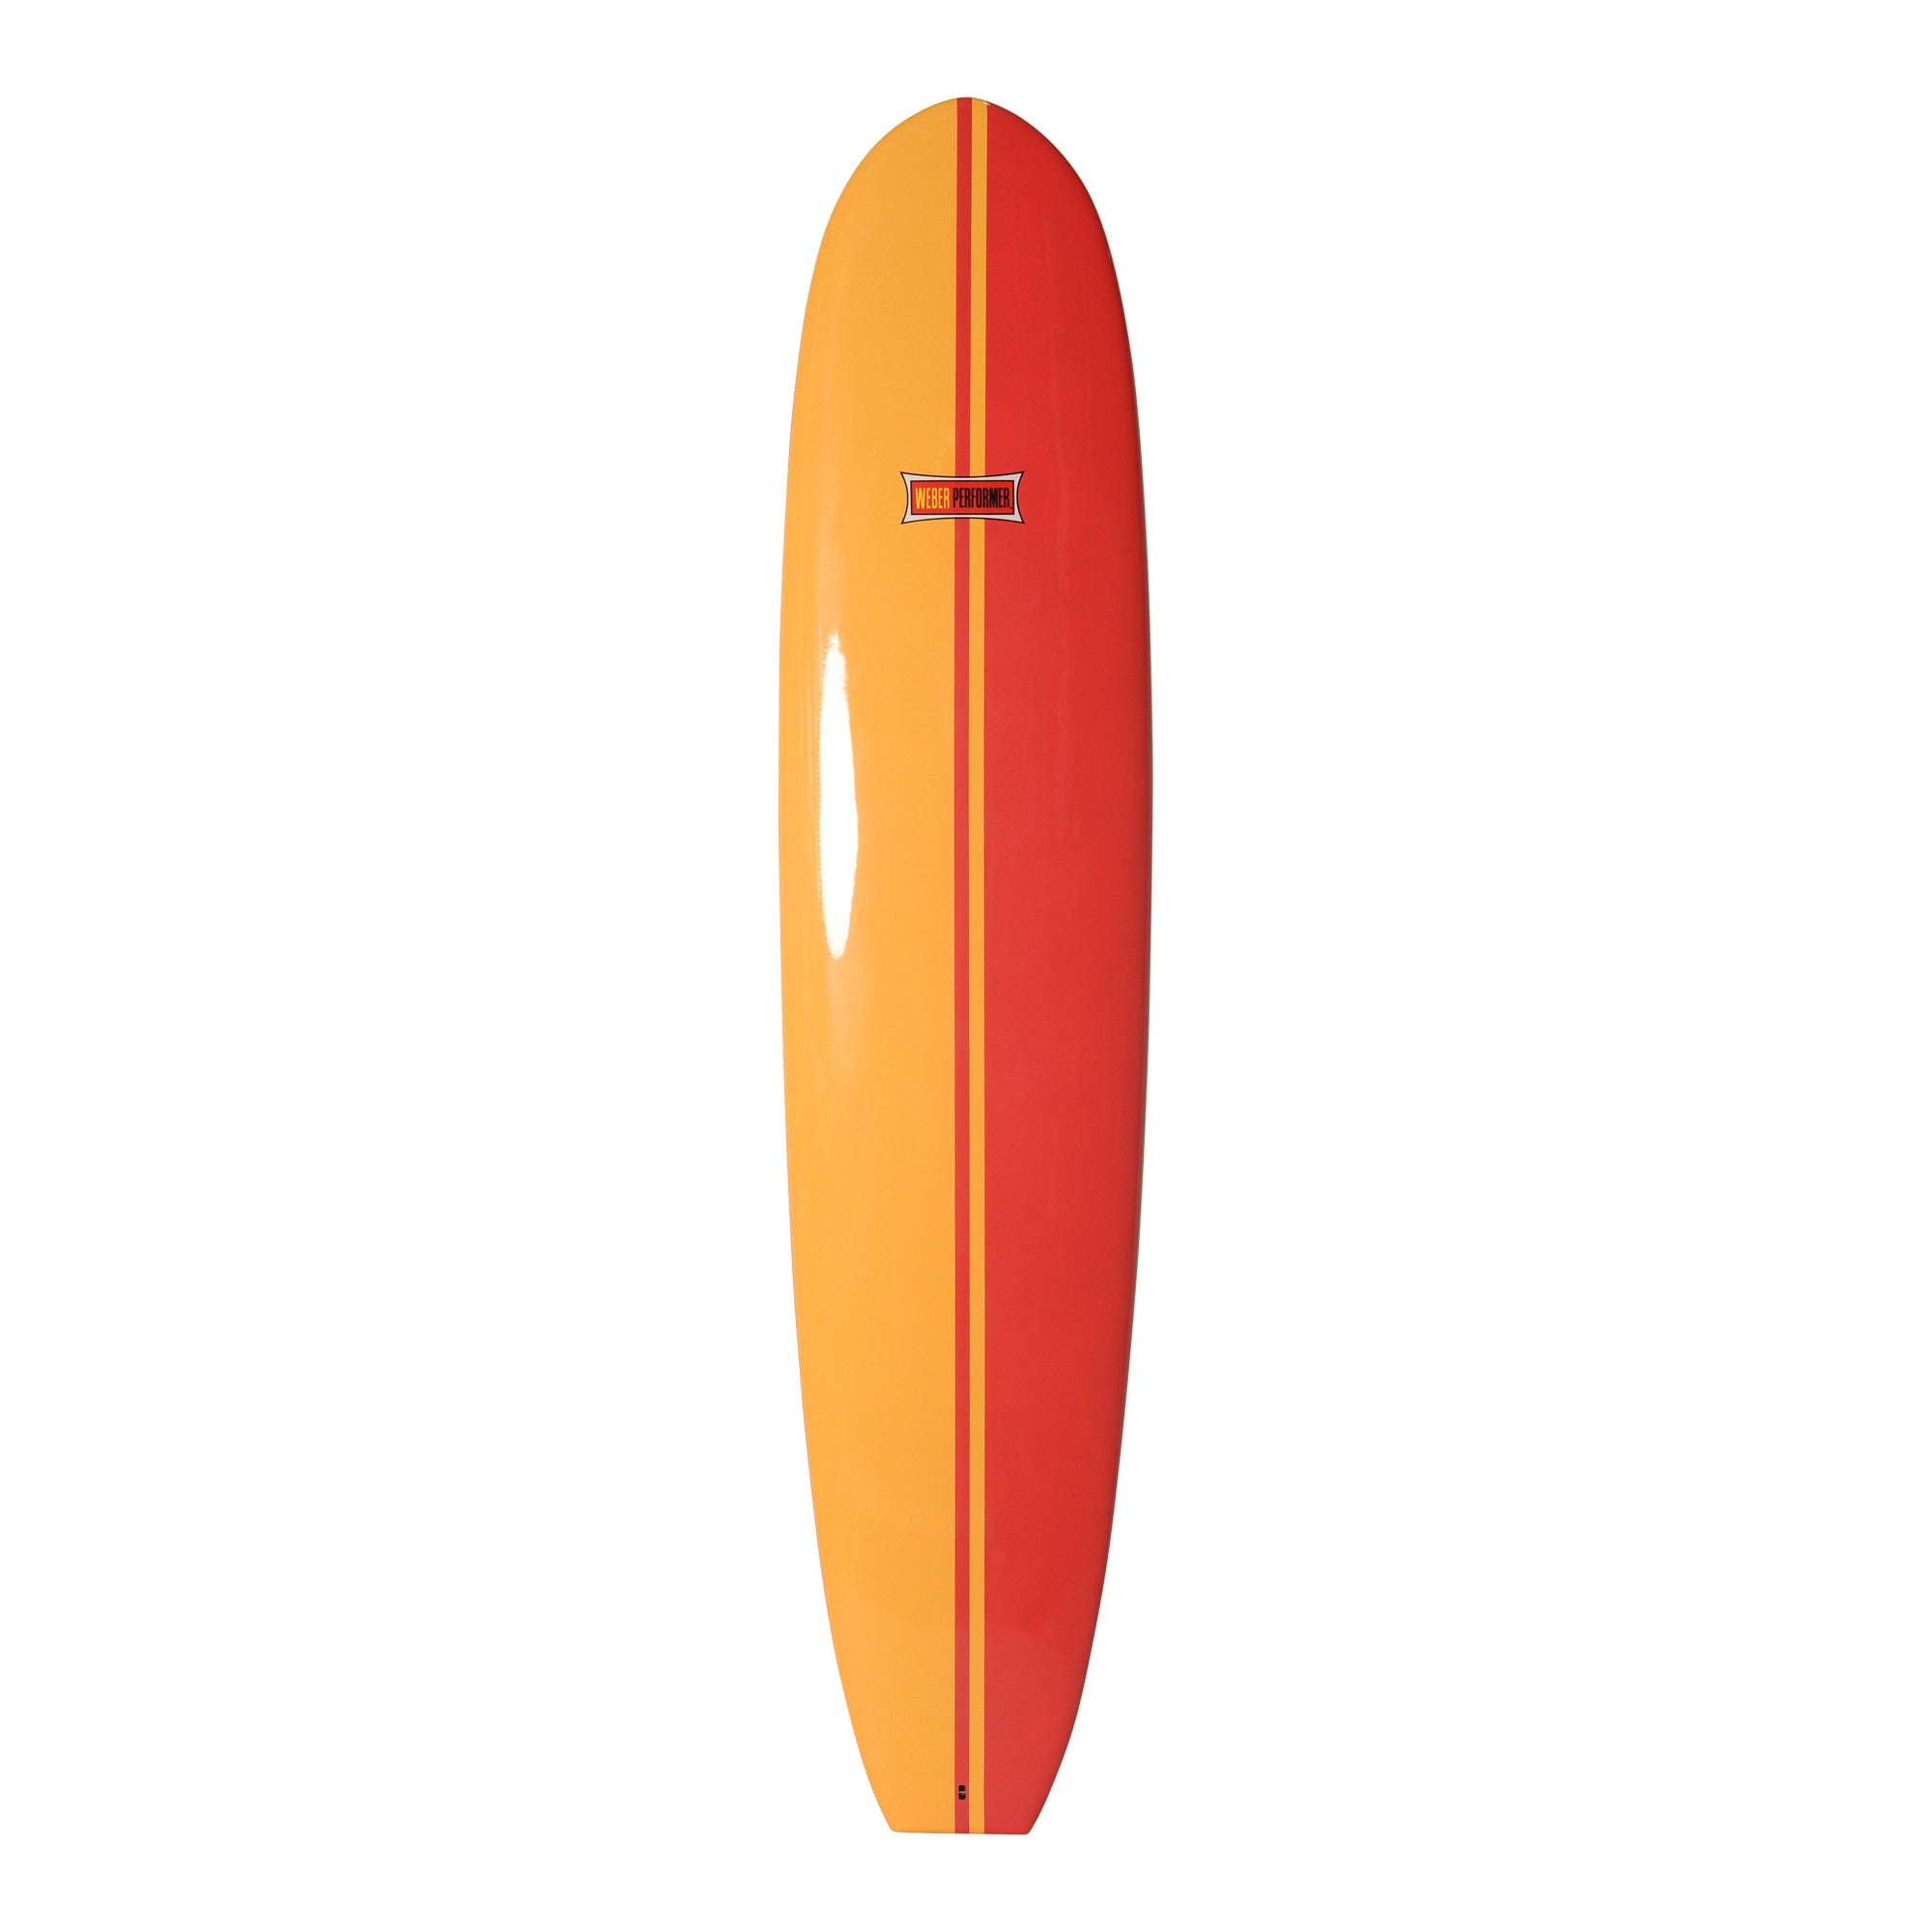 TABLAS DE SURF WEBER - Performer 9'4 - Rojo / Amarillo